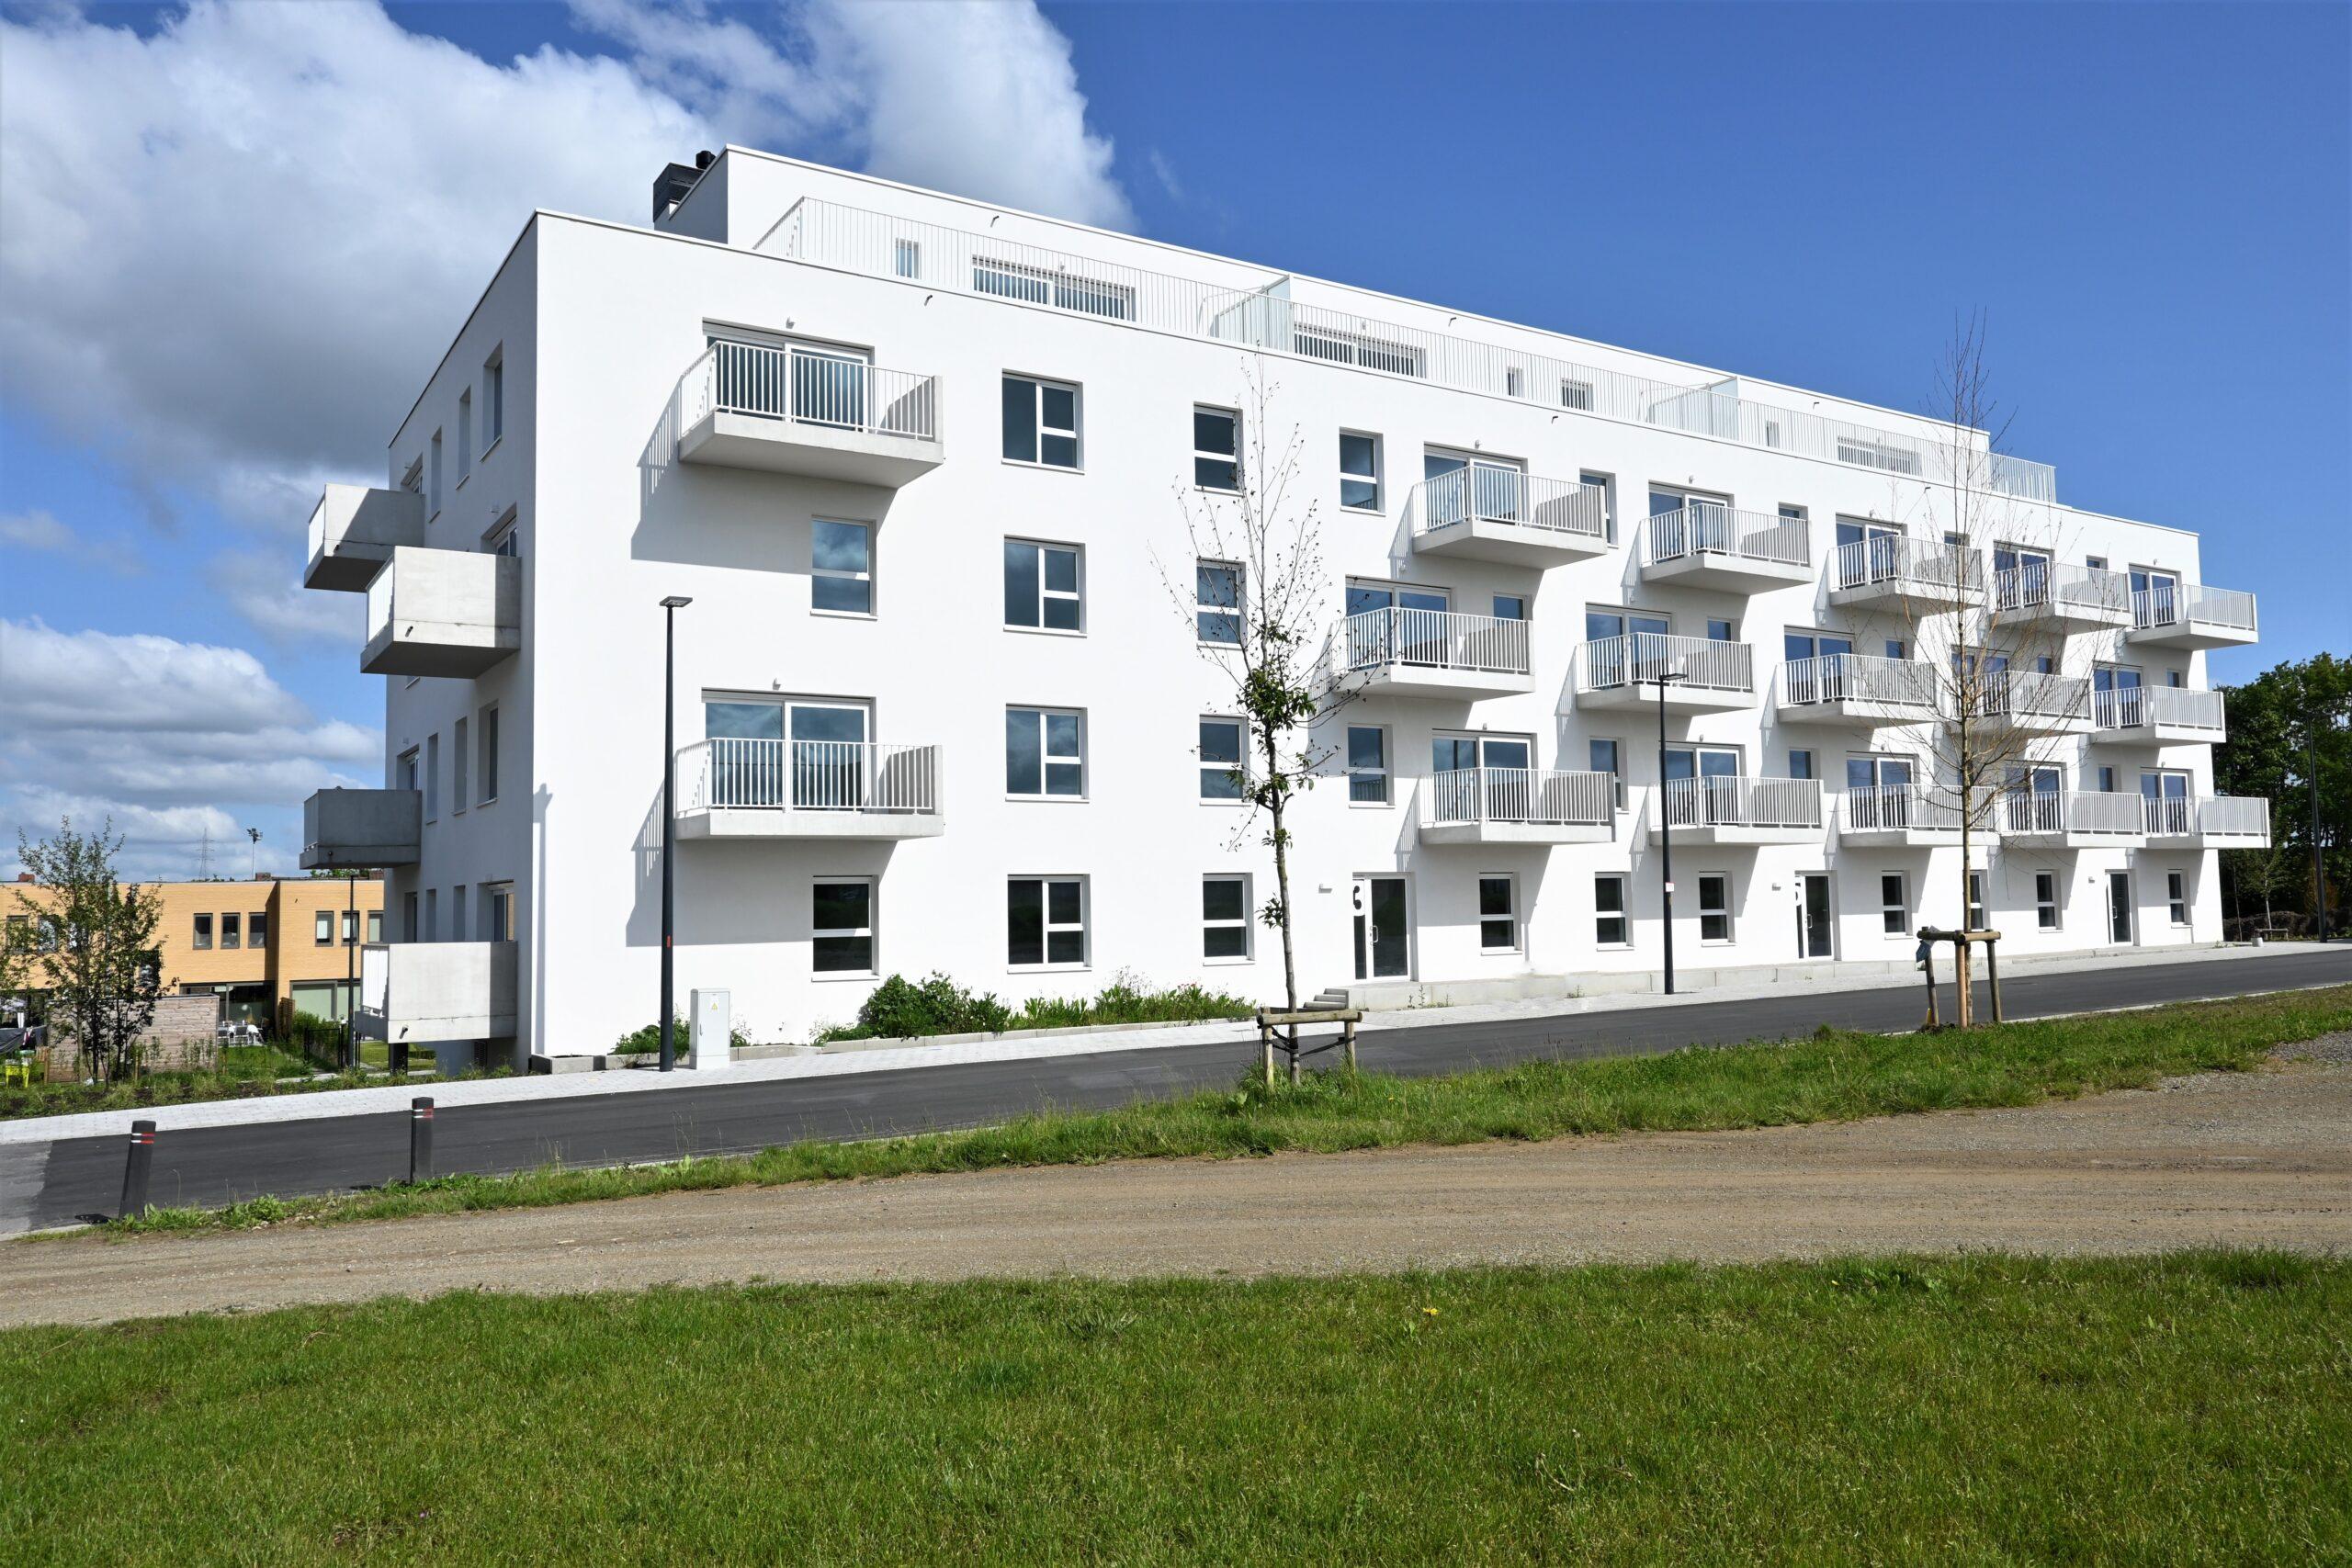 Featured image for “Te koop: appartementen in centrum Zwevegem”